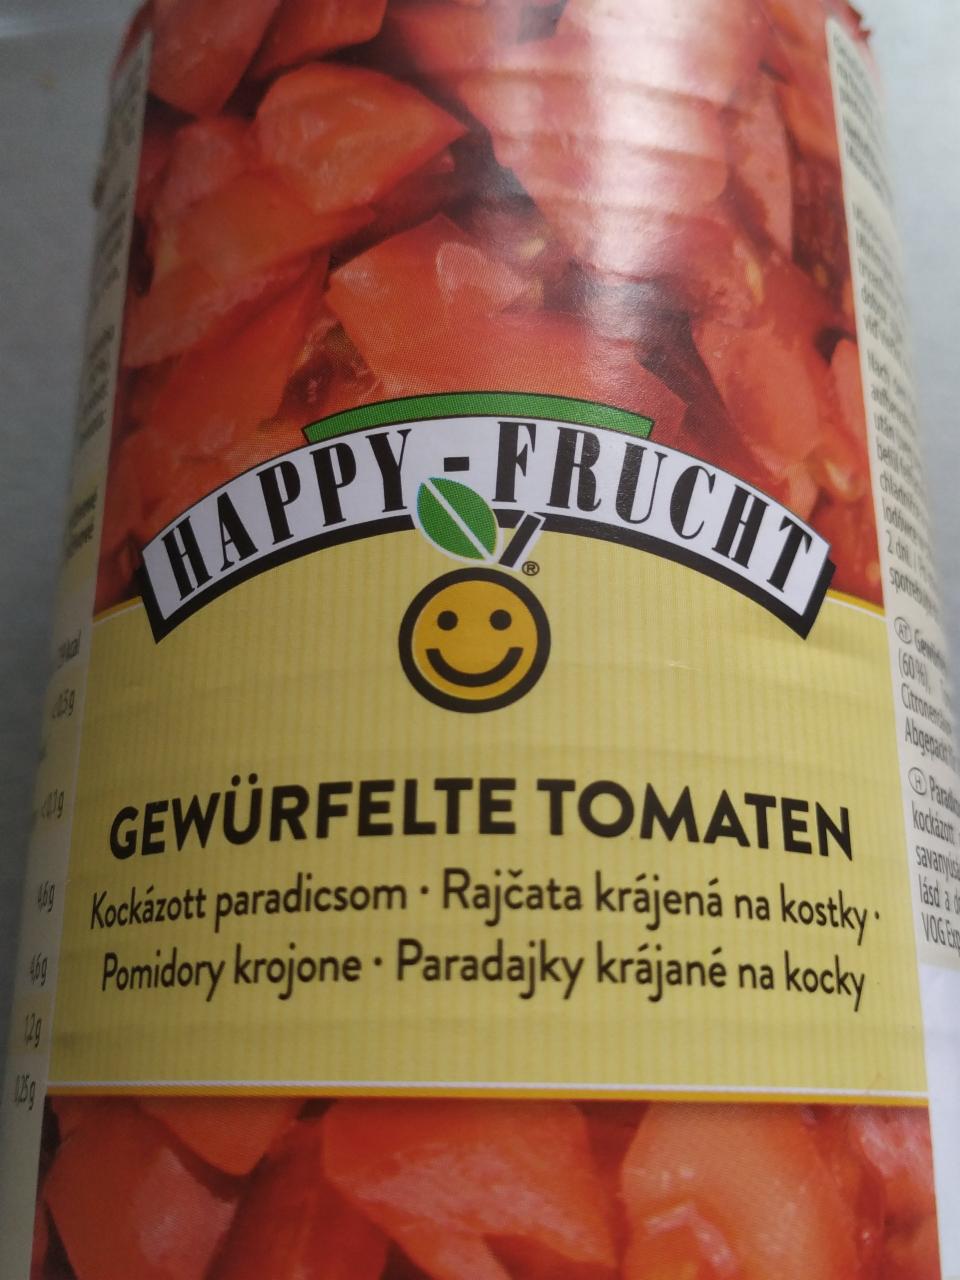 Képek - Gewürfelte tomaten (Kockázott paradicsom) Happy - frucht